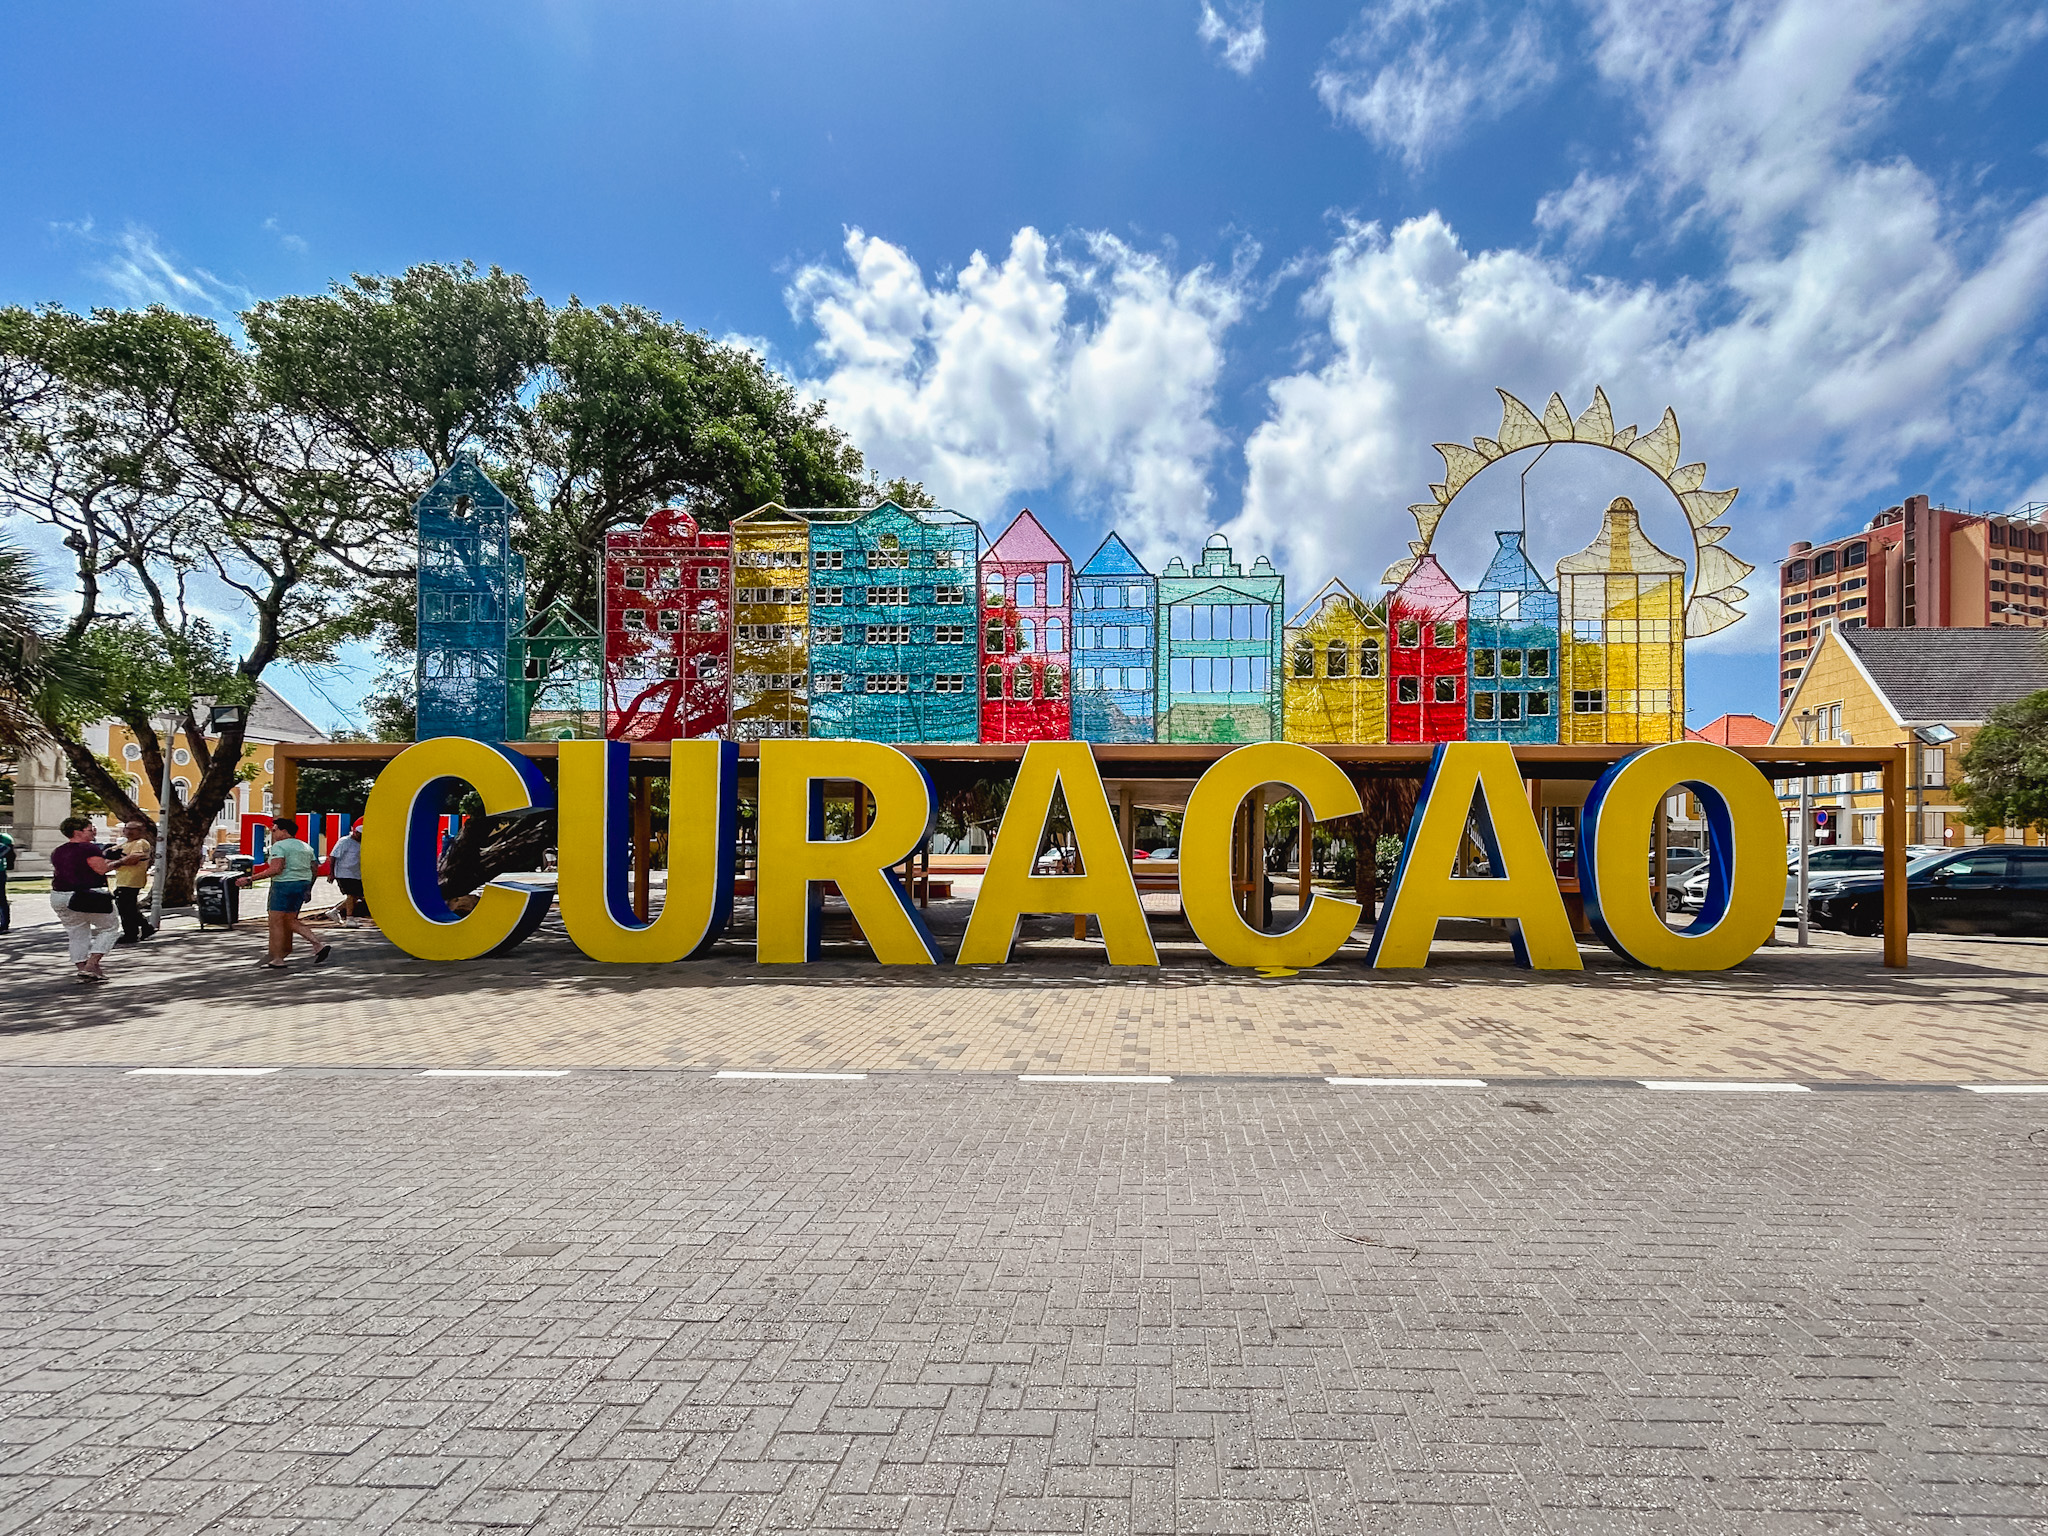 Letreiro de Curaçao, um dos cenários instagramáveis da cidade